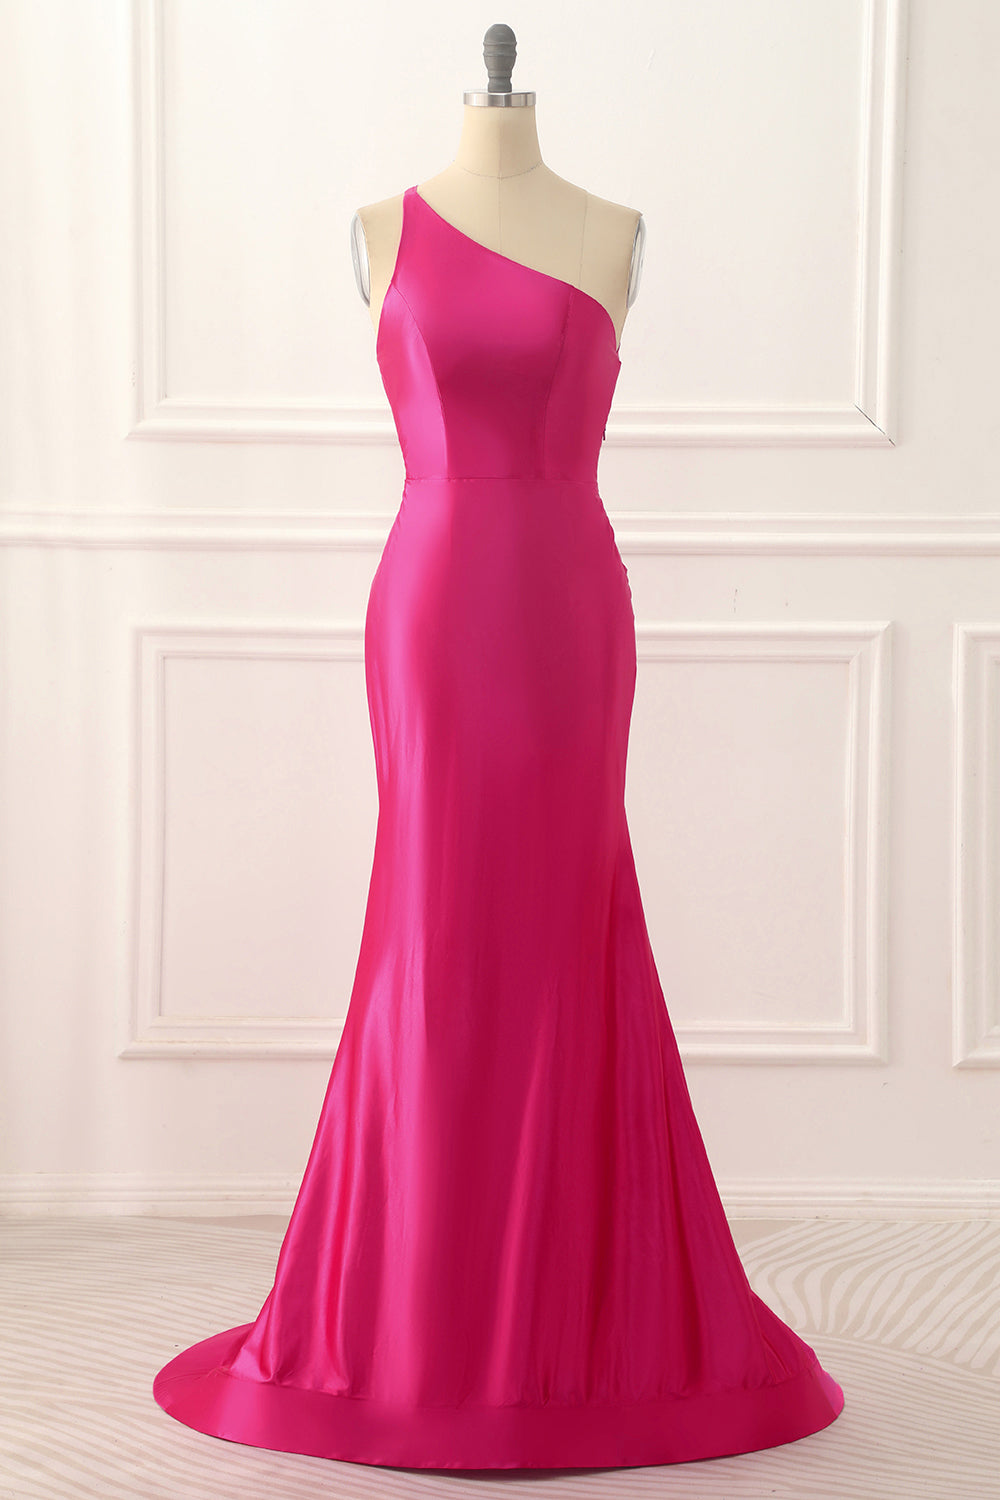 One Shoulder Hot Pink Satin Backless Long Prom Dress